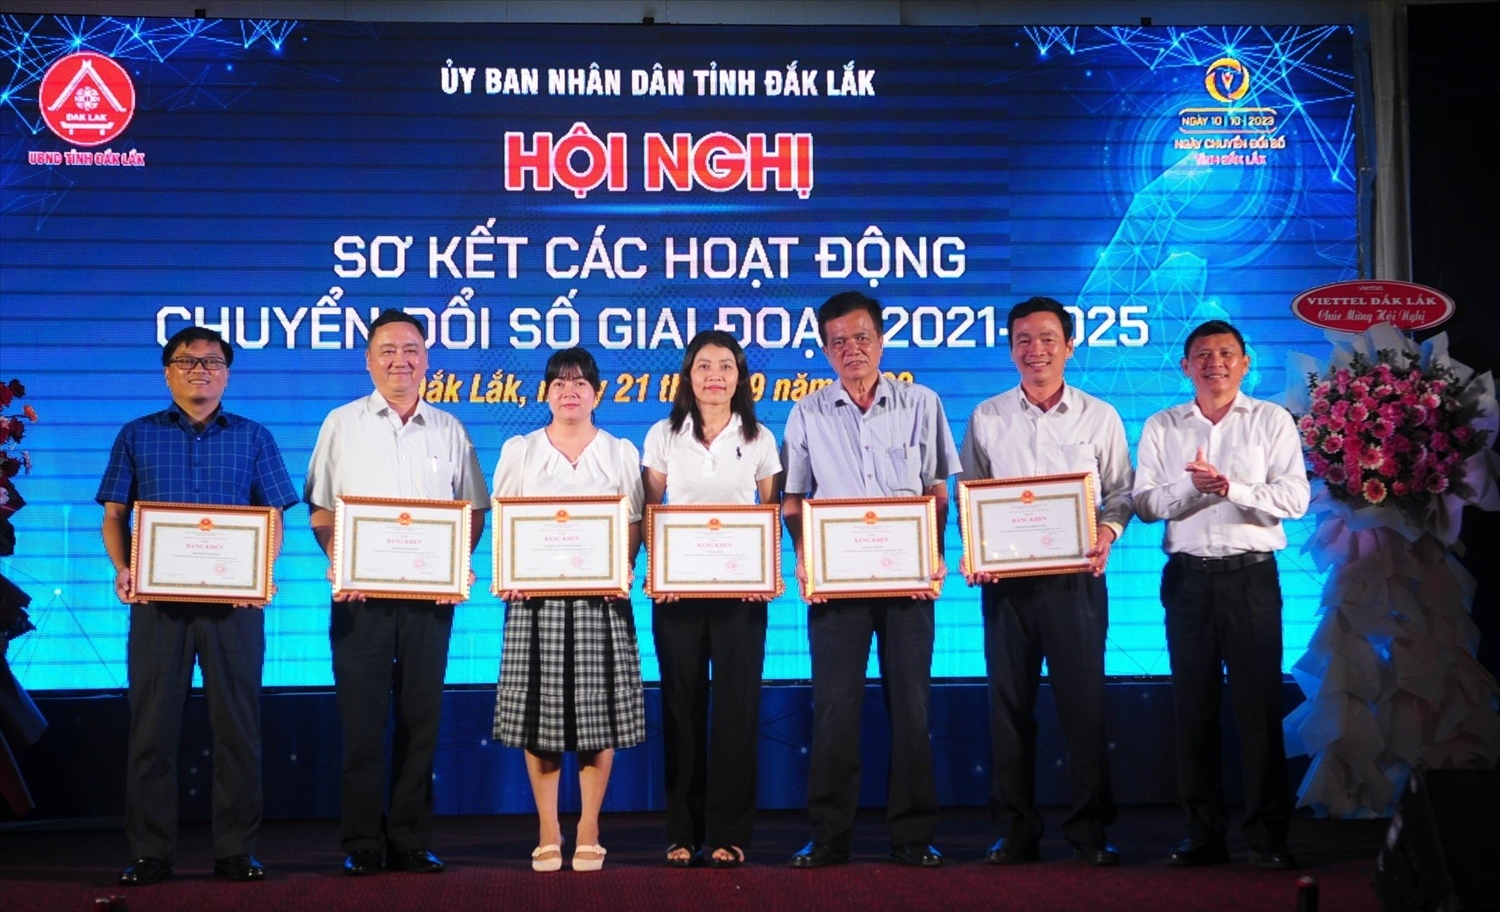 Phó Chủ tịch Thường trực UBND tỉnh Đắk Lắk Nguyễn Tuấn Hà tặng Bằng khen các tập thể có thành tích xuất sắc trong công tác Chuyển đổi số